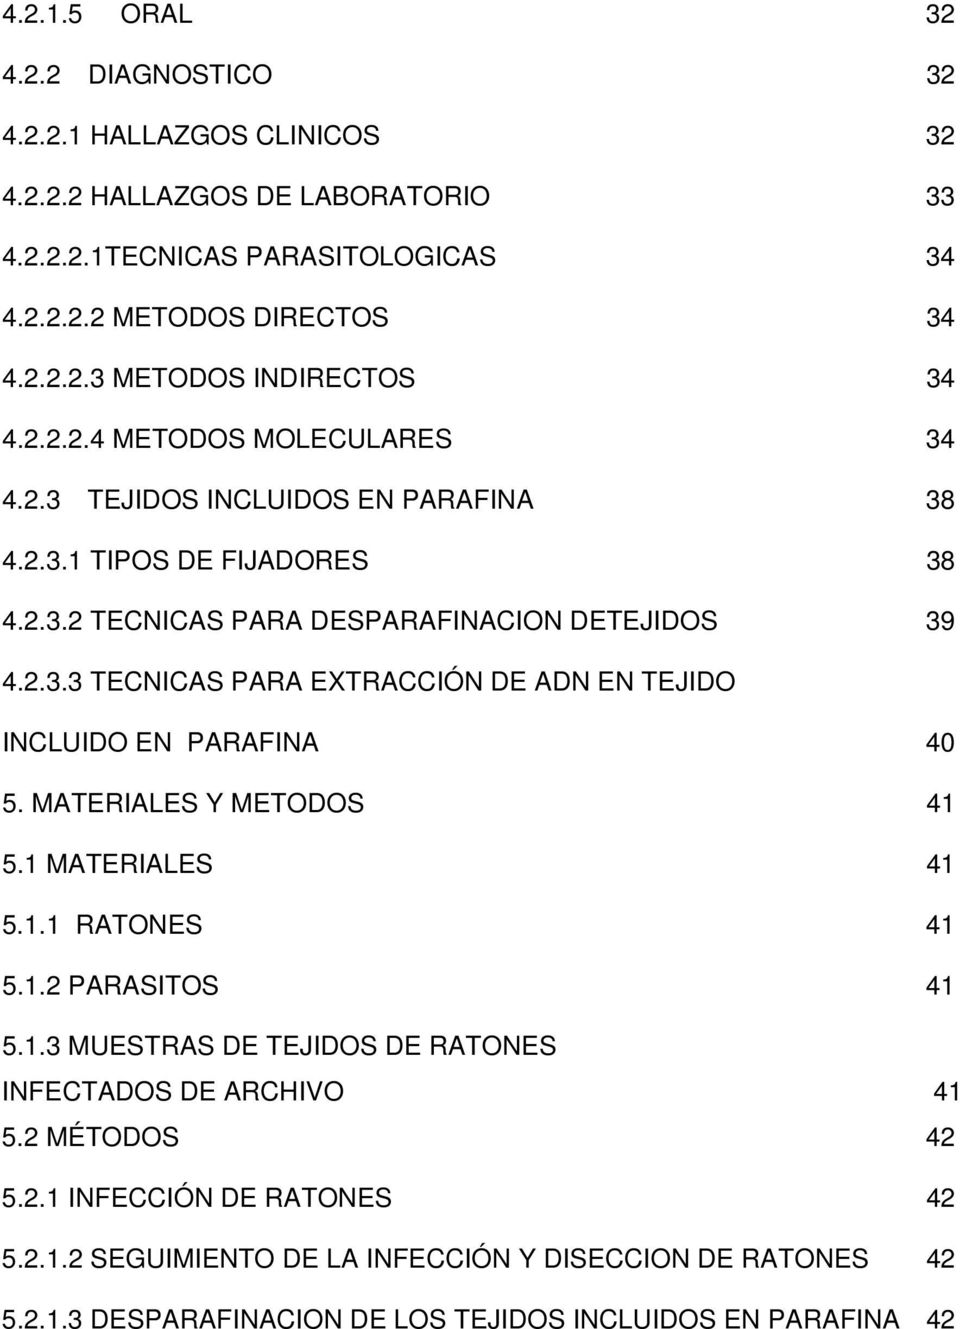 MATERIALES Y METODOS 41 5.1 MATERIALES 41 5.1.1 RATONES 41 5.1.2 PARASITOS 41 5.1.3 MUESTRAS DE TEJIDOS DE RATONES INFECTADOS DE ARCHIVO 41 5.2 MÉTODOS 42 5.2.1 INFECCIÓN DE RATONES 42 5.